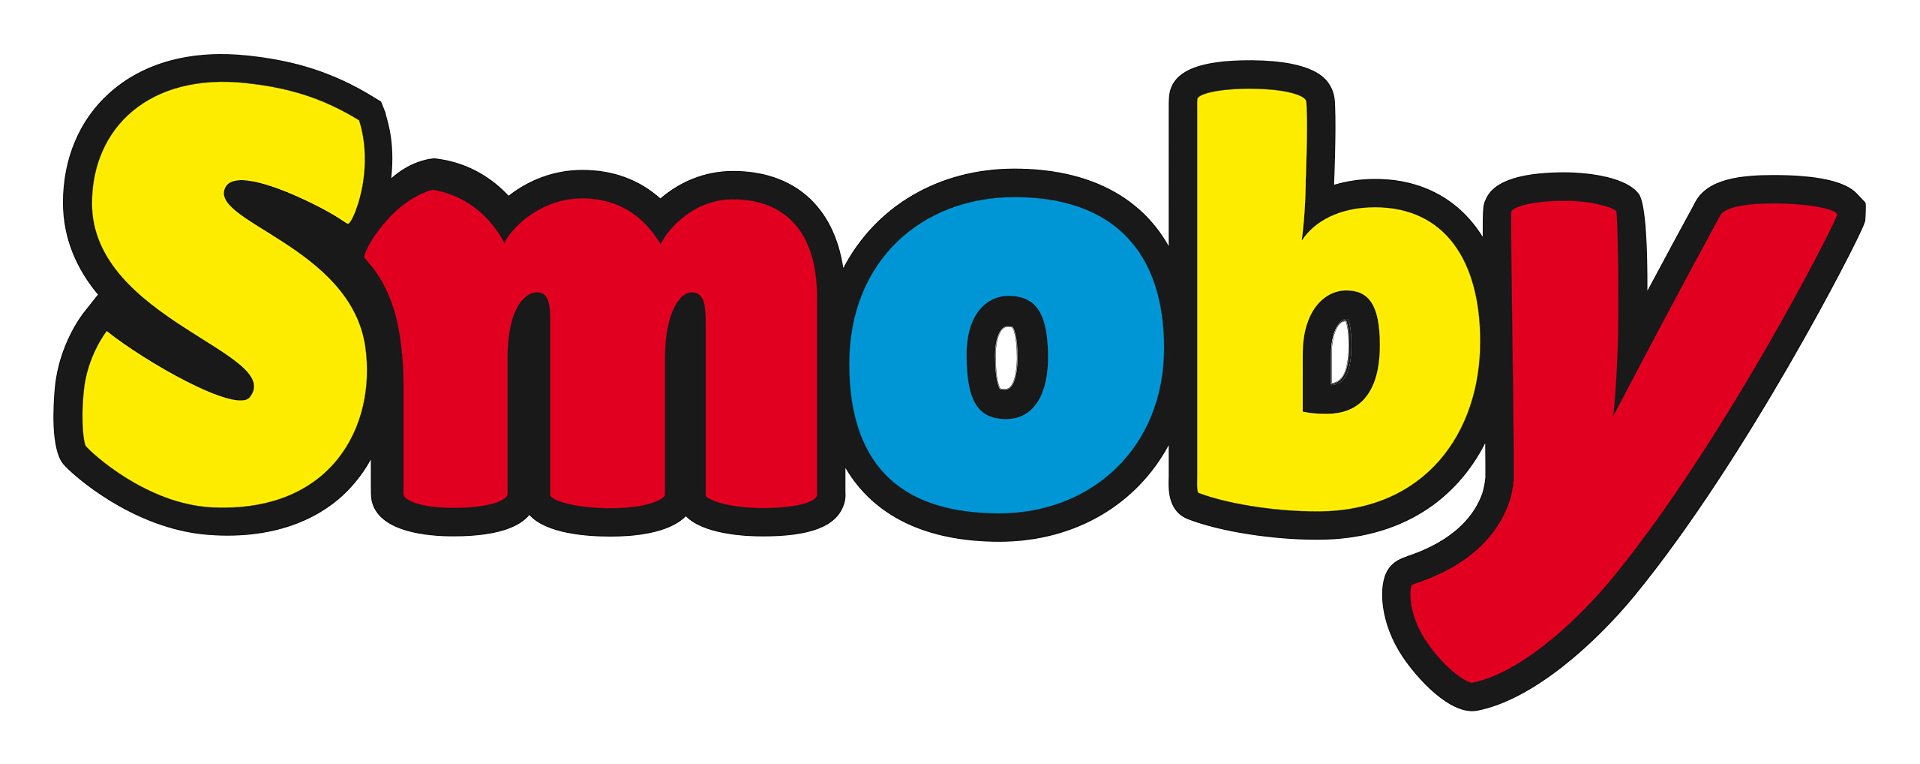 Smoby Supermarkt: Kinder-Einkaufswagen für Spielen realistisches